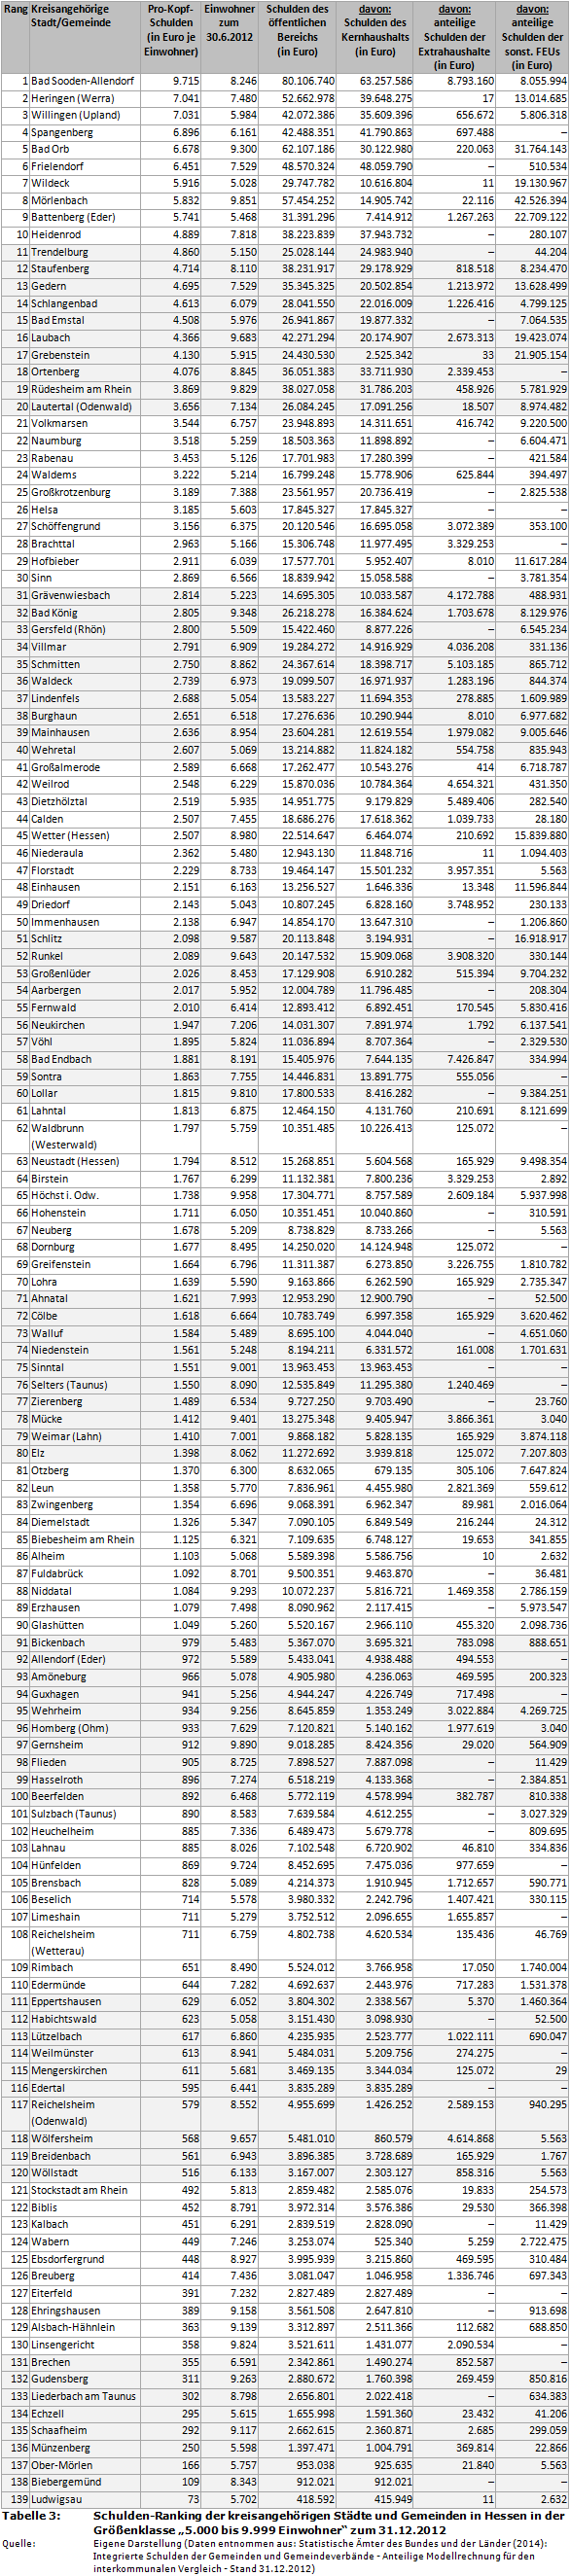 Schulden-Ranking der kreisangehörigen Städte und Gemeinden in Hessen in der Größenklasse '5.000 bis 9.999 Einwohner' zum 31.12.2012